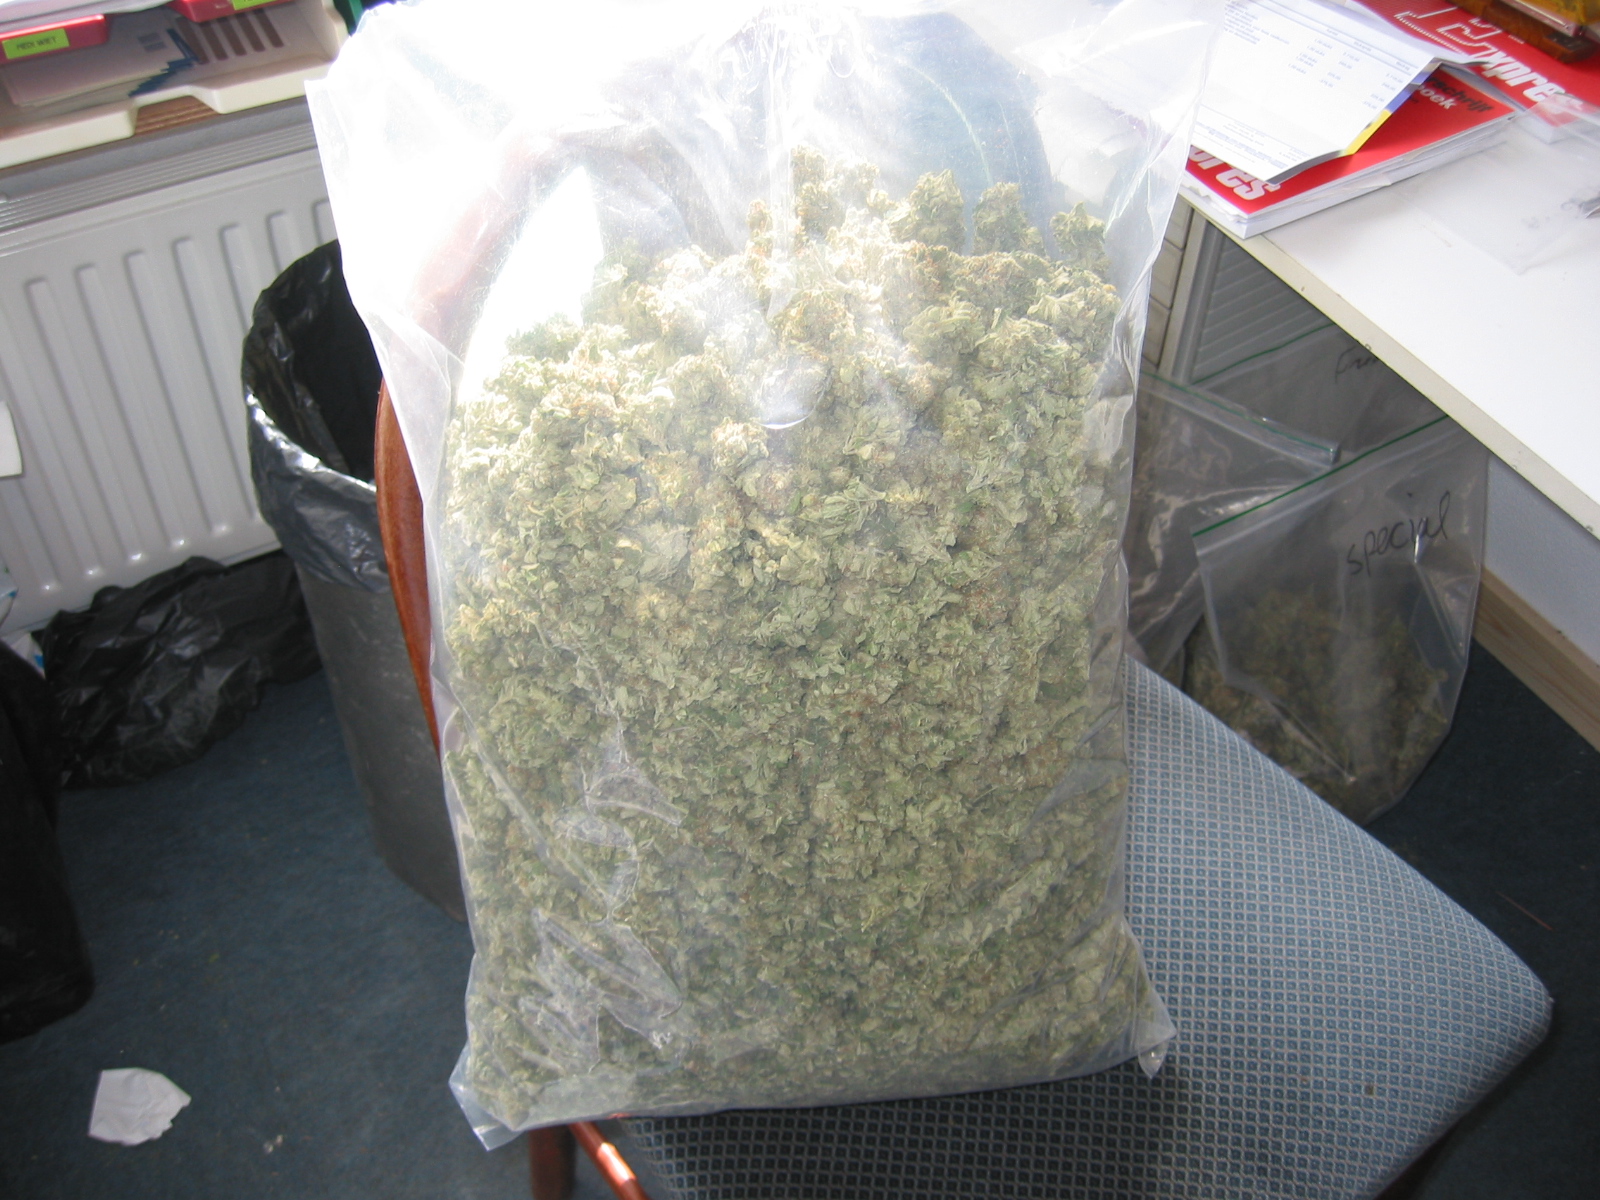 bag of weed